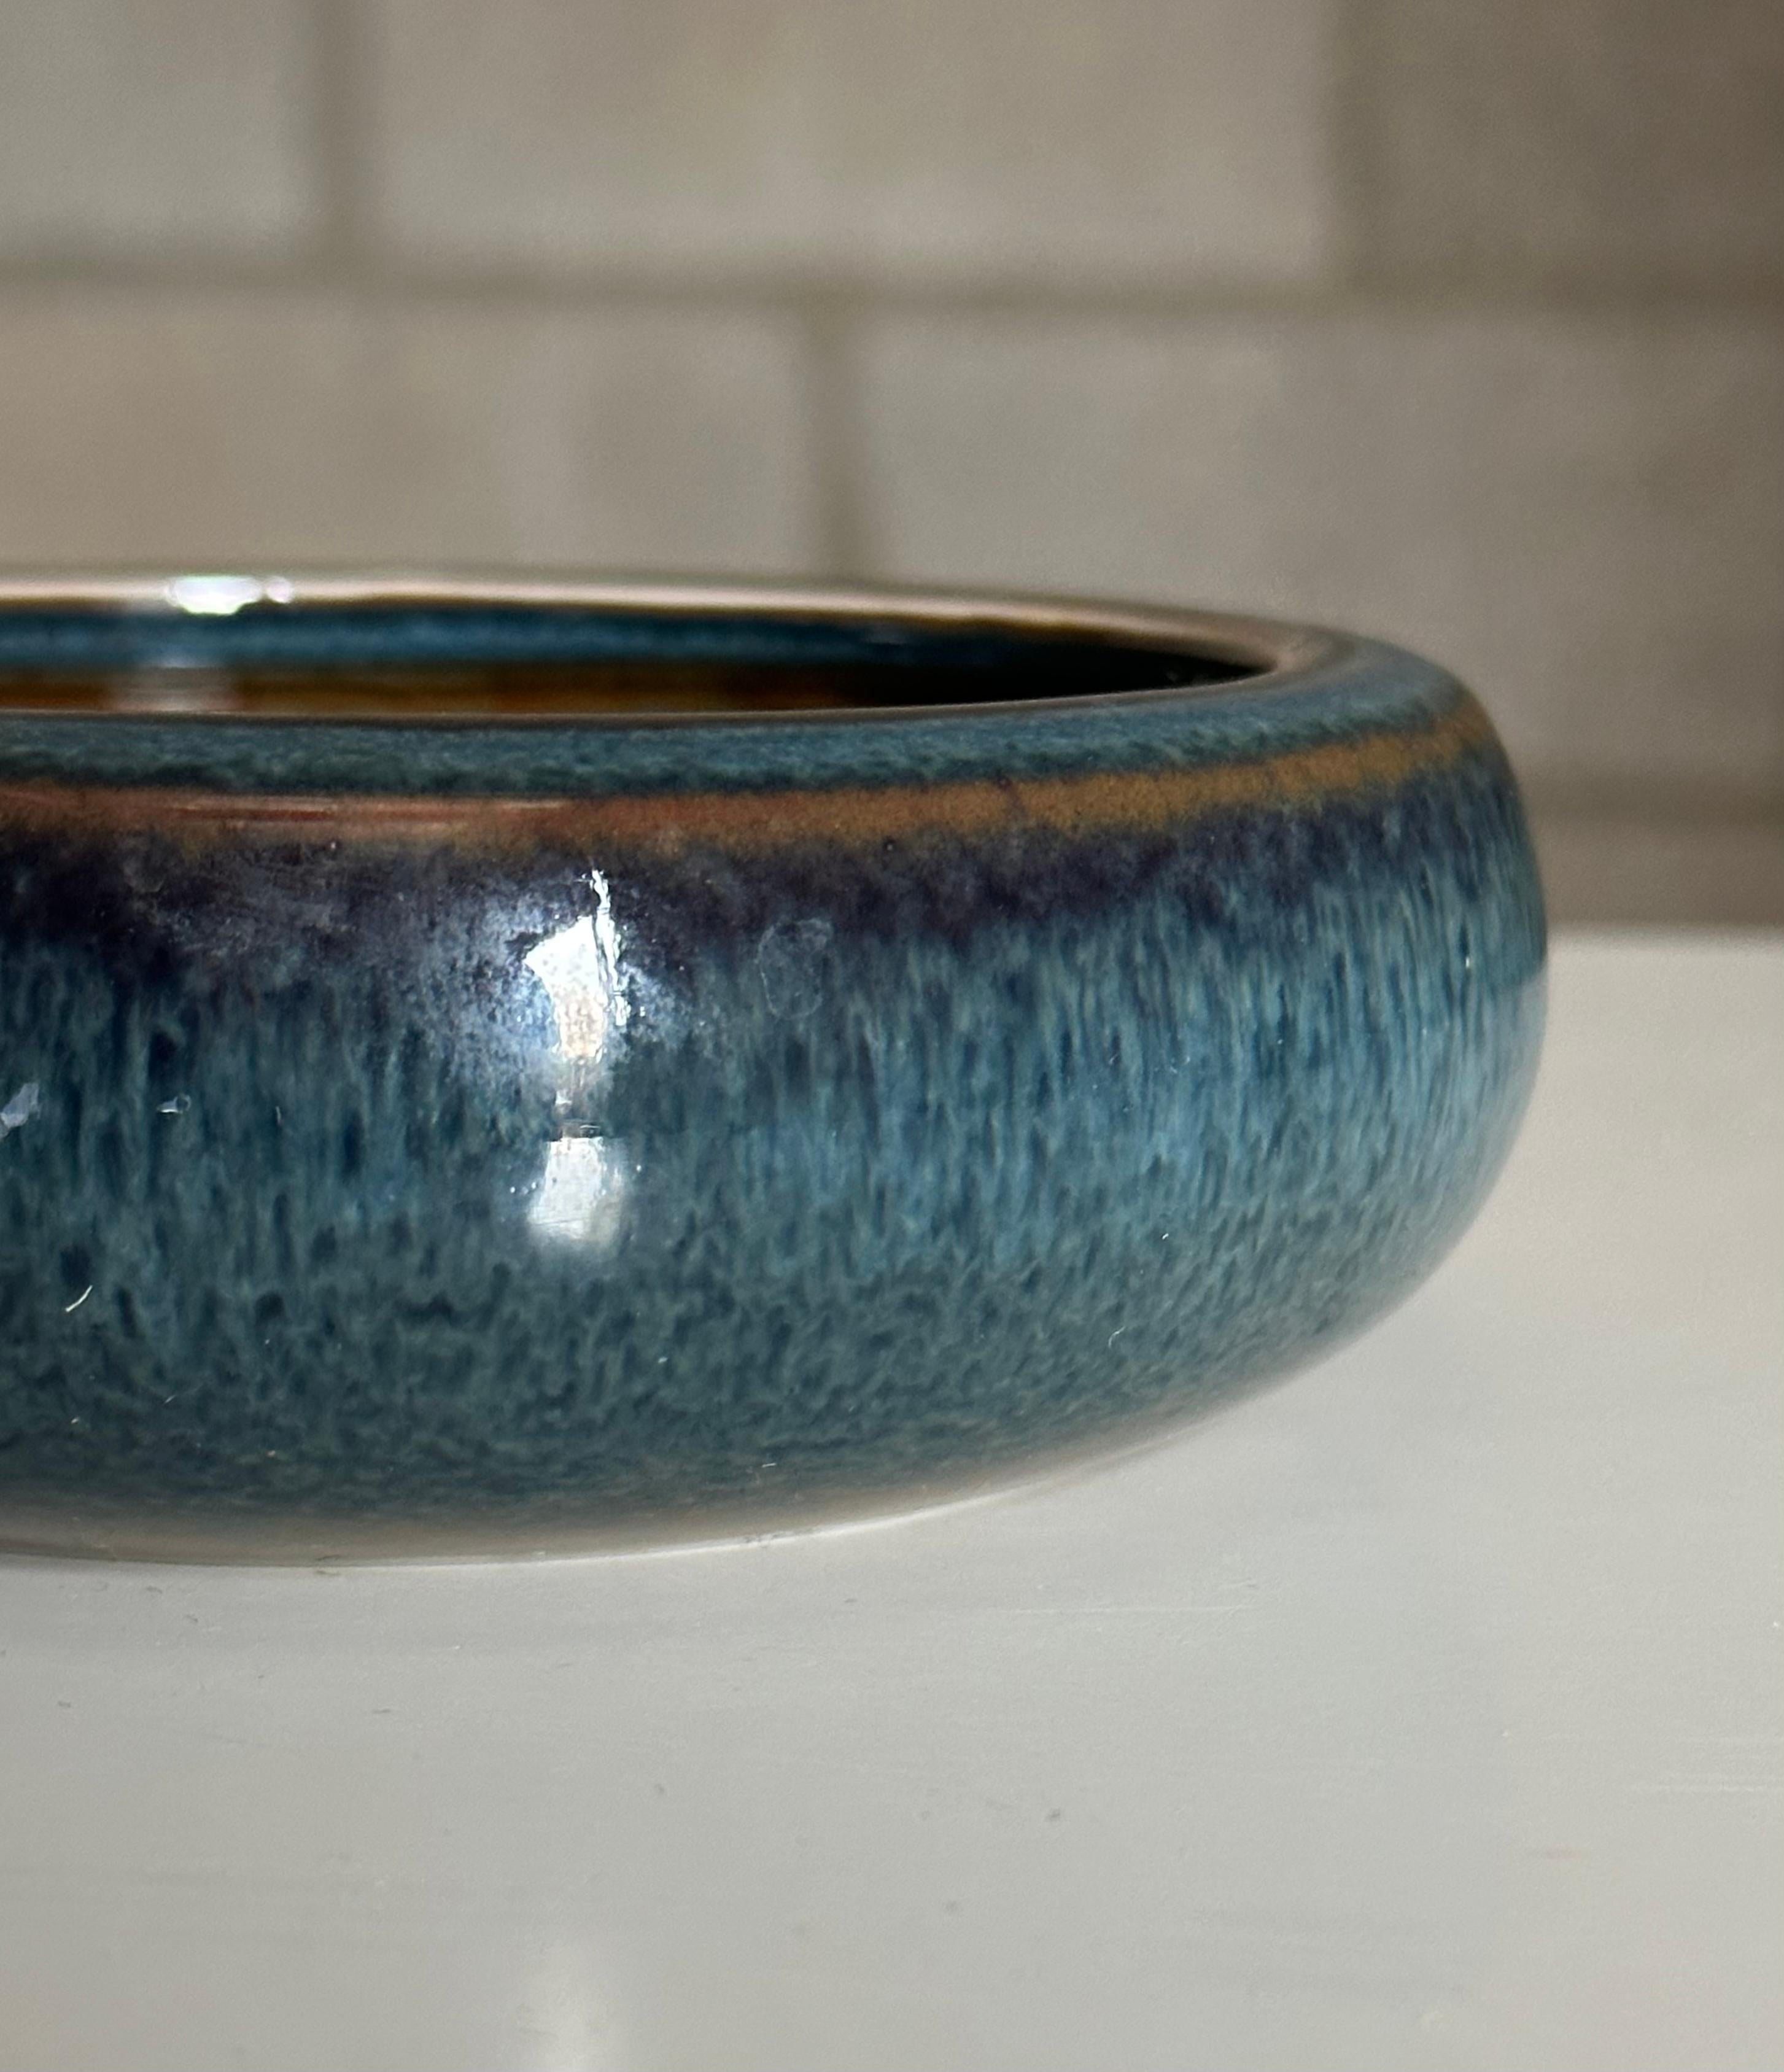 Un magnifique bol dans une glaçure bleue brillante inhabituelle de Carl Harry Stålhane pour Rörstrand. La bonne taille pourrait permettre une utilisation comme vide poche. S'intègre bien dans une variété d'intérieurs : modernes, contemporains du